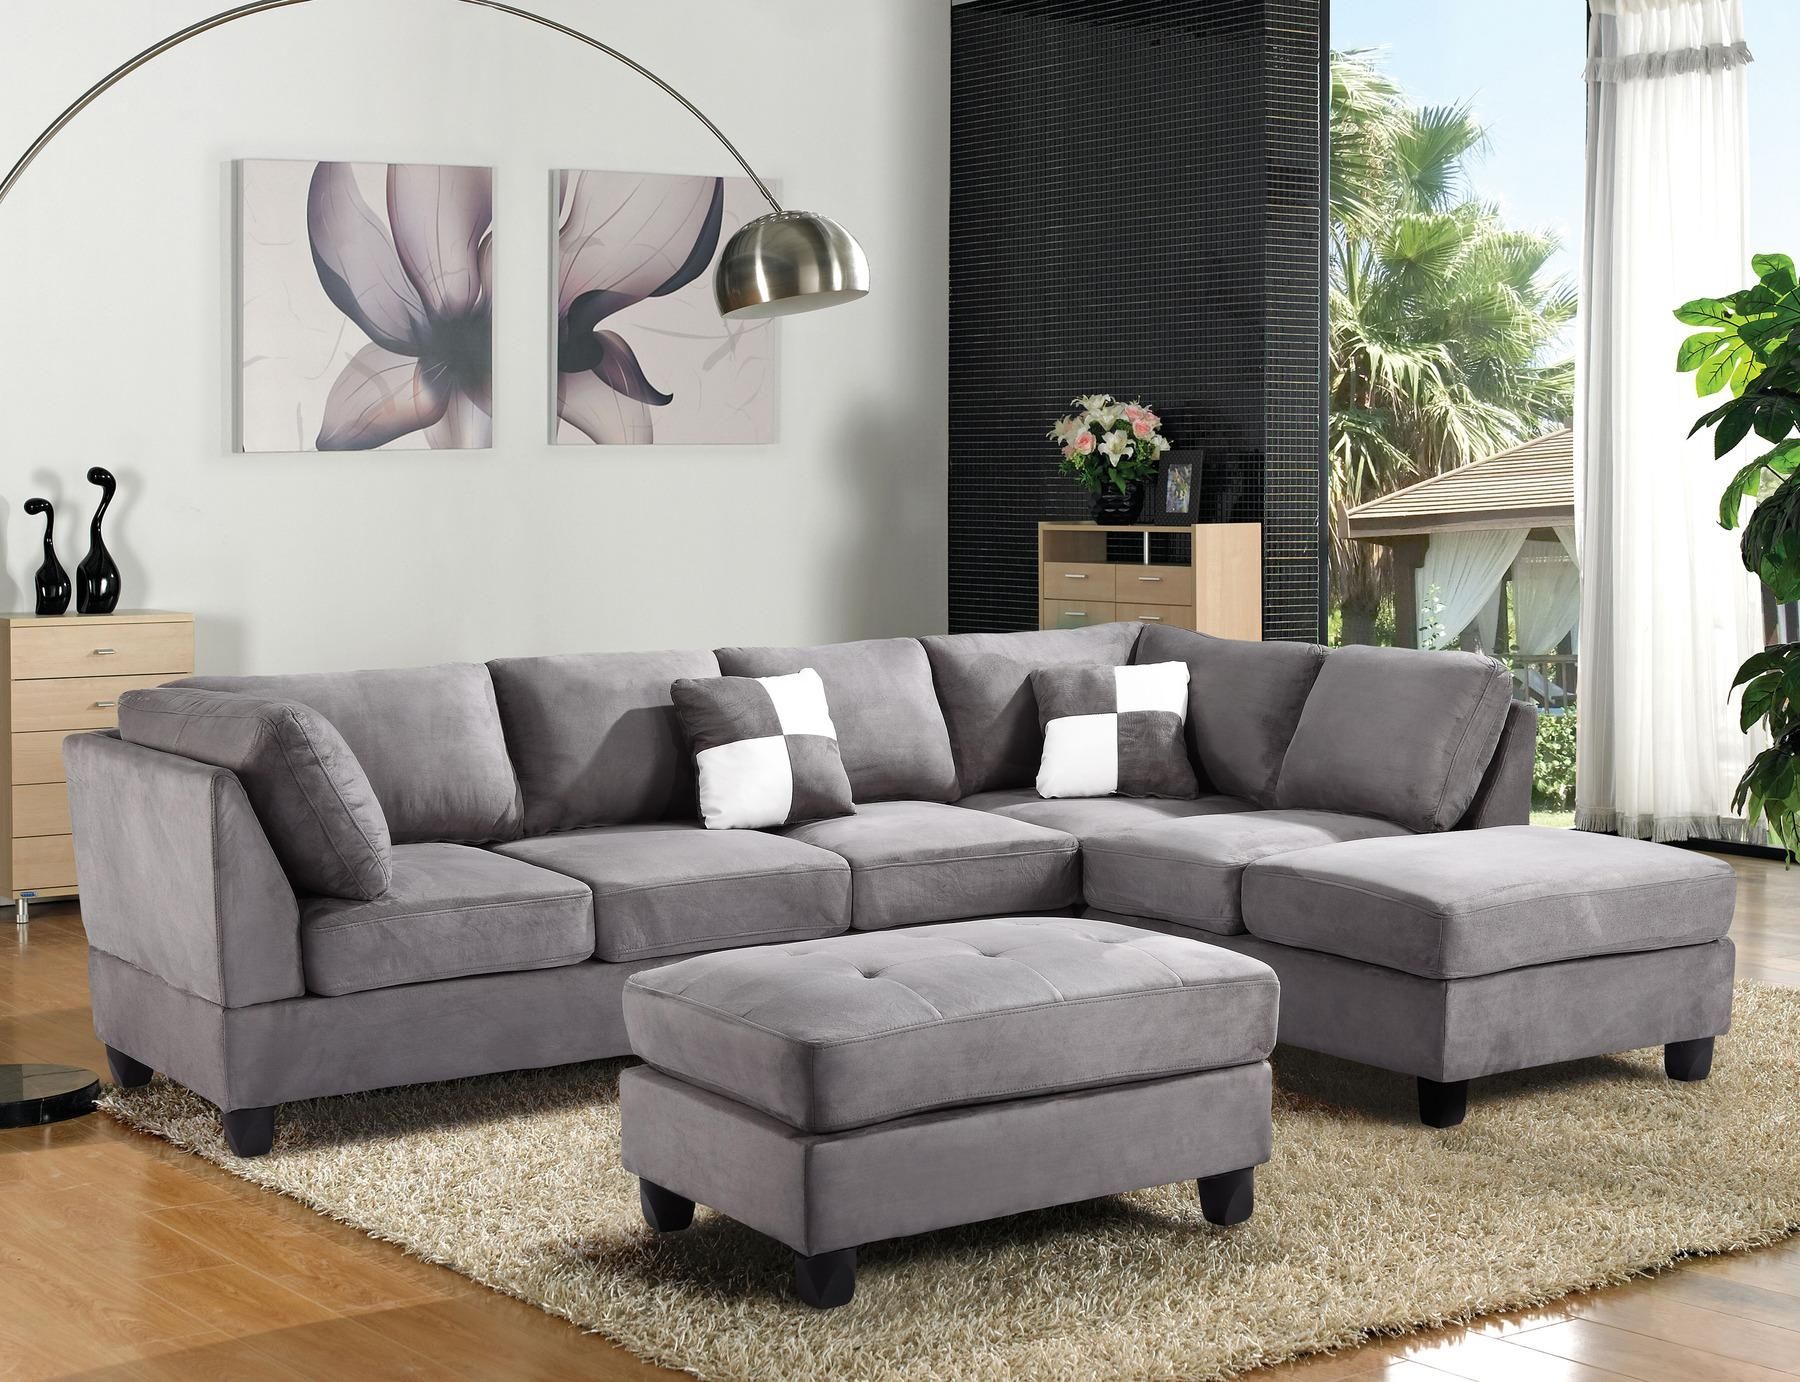 Sofa : Leather Sofas Orange County Home Design Wonderfull With Regard To Sofas Orange County (View 3 of 20)